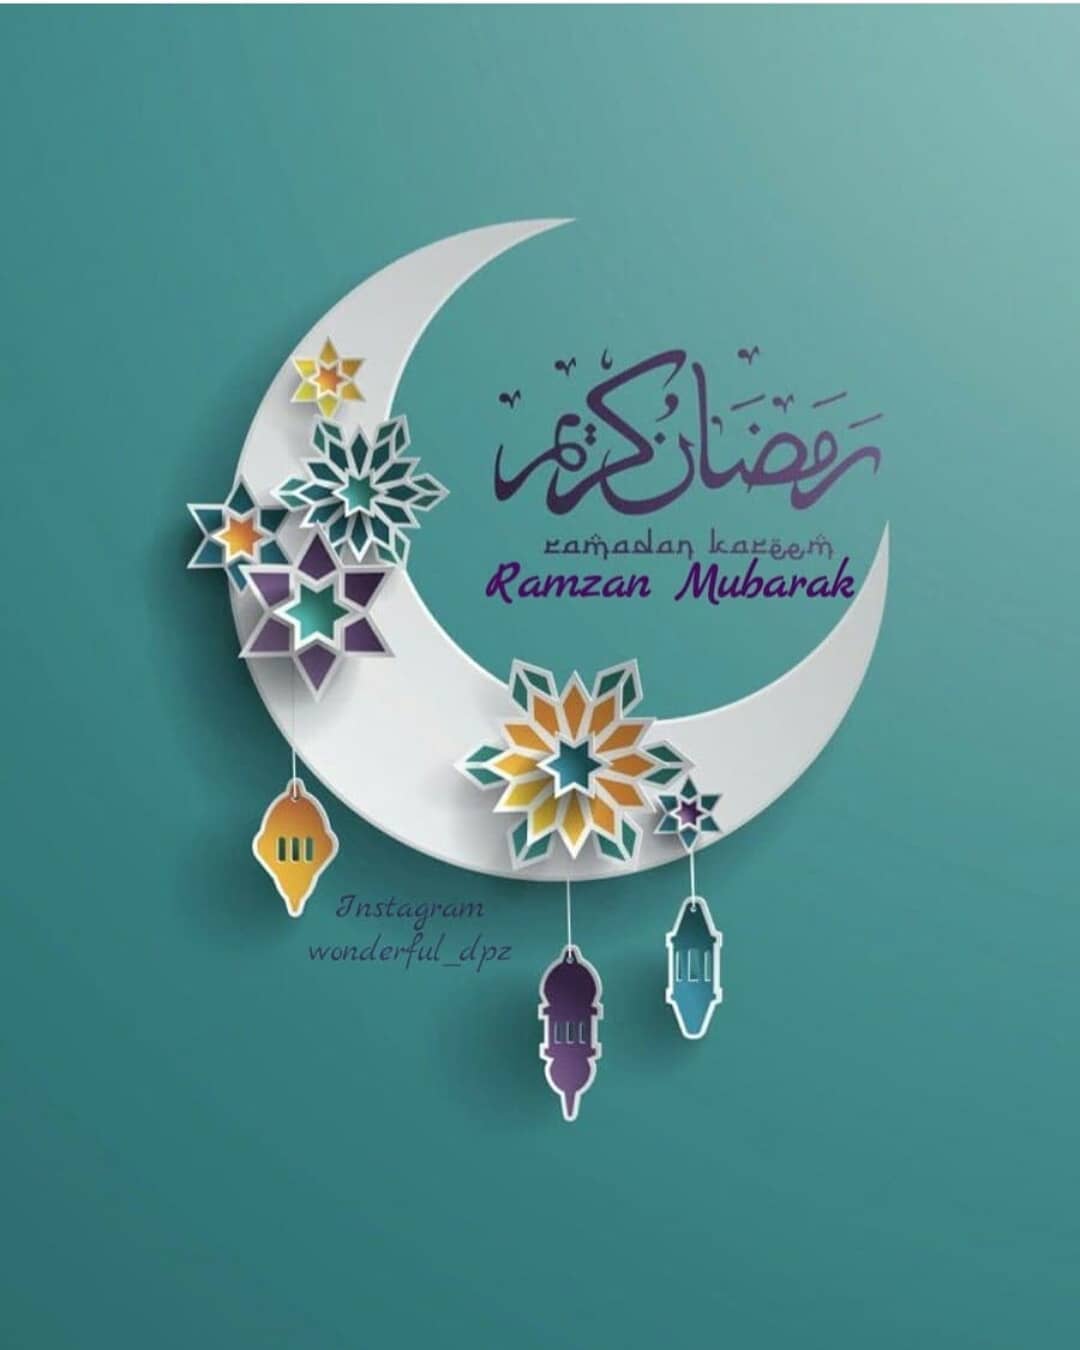  رسائل تهنئة رمضان 2020 احلى رسائل تهنئة بمناسبة الشهر الكريم